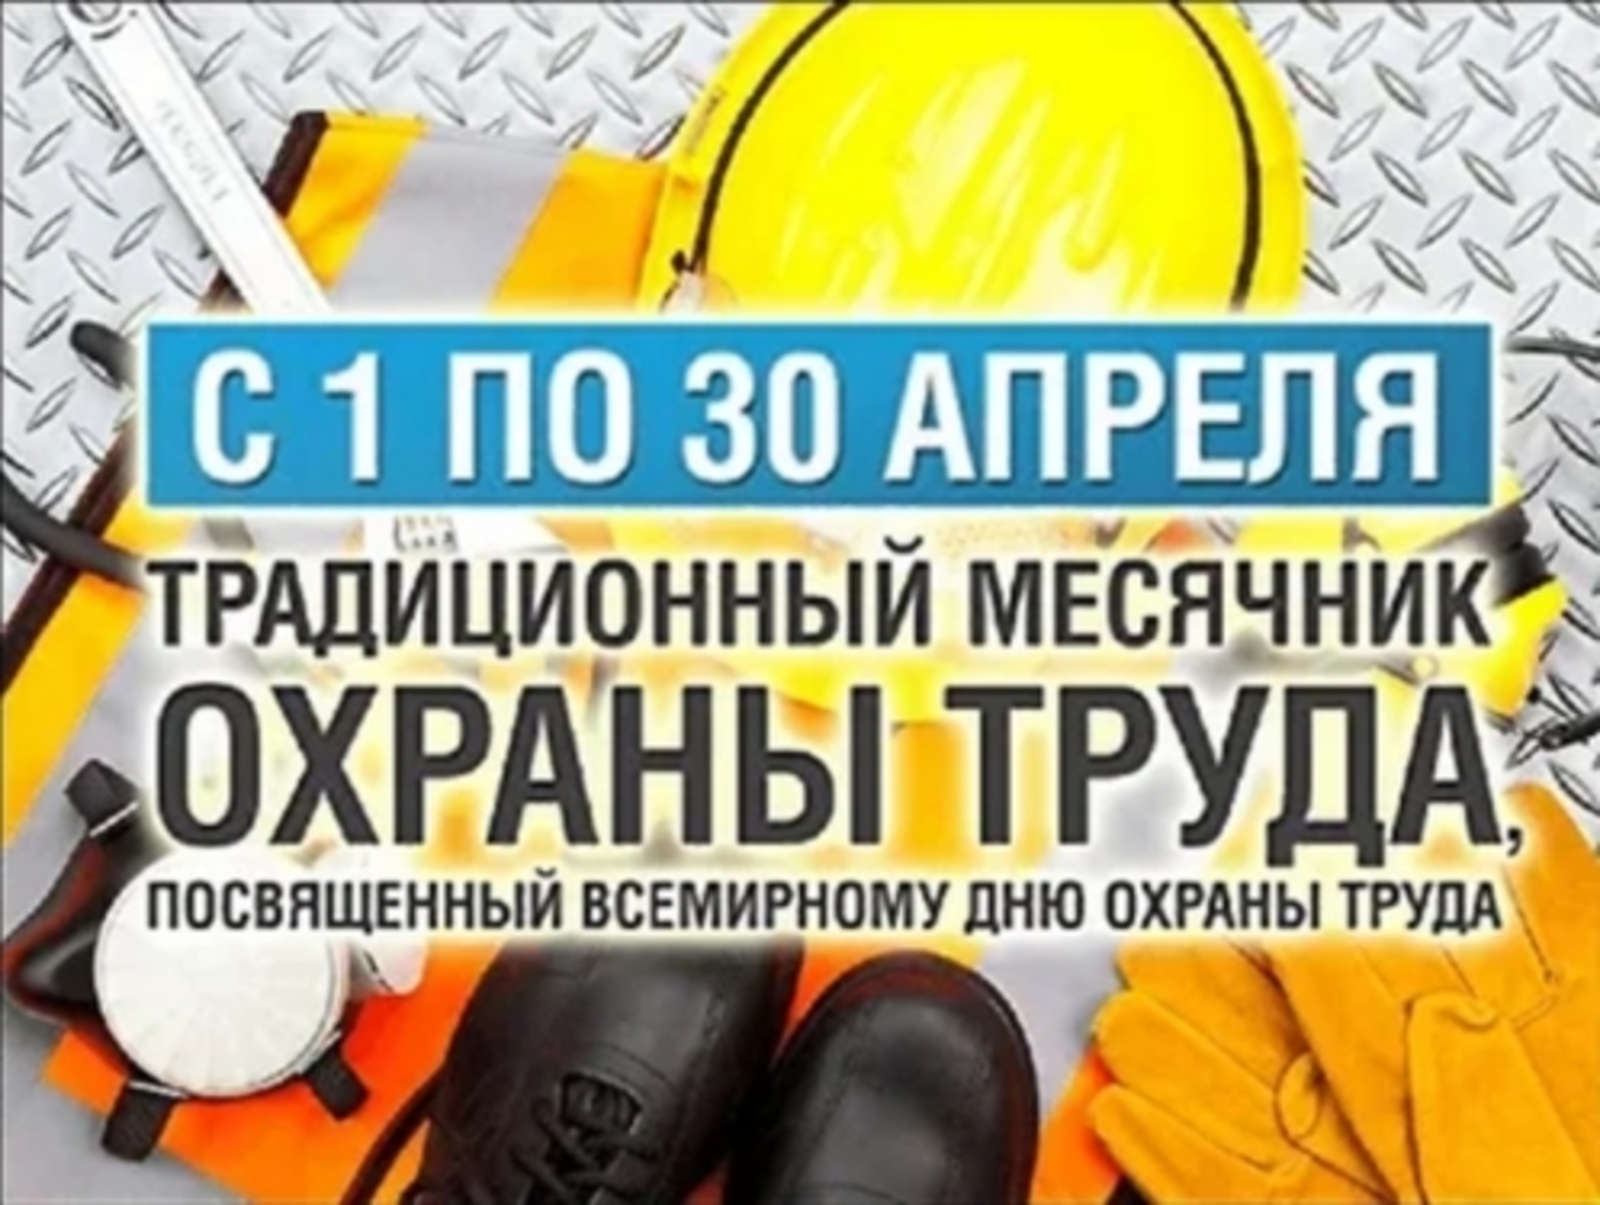 Министерство труда и социальной защиты Калужской области призывает все организации активно включиться в проведение мероприятий месячника безопасности труда!.